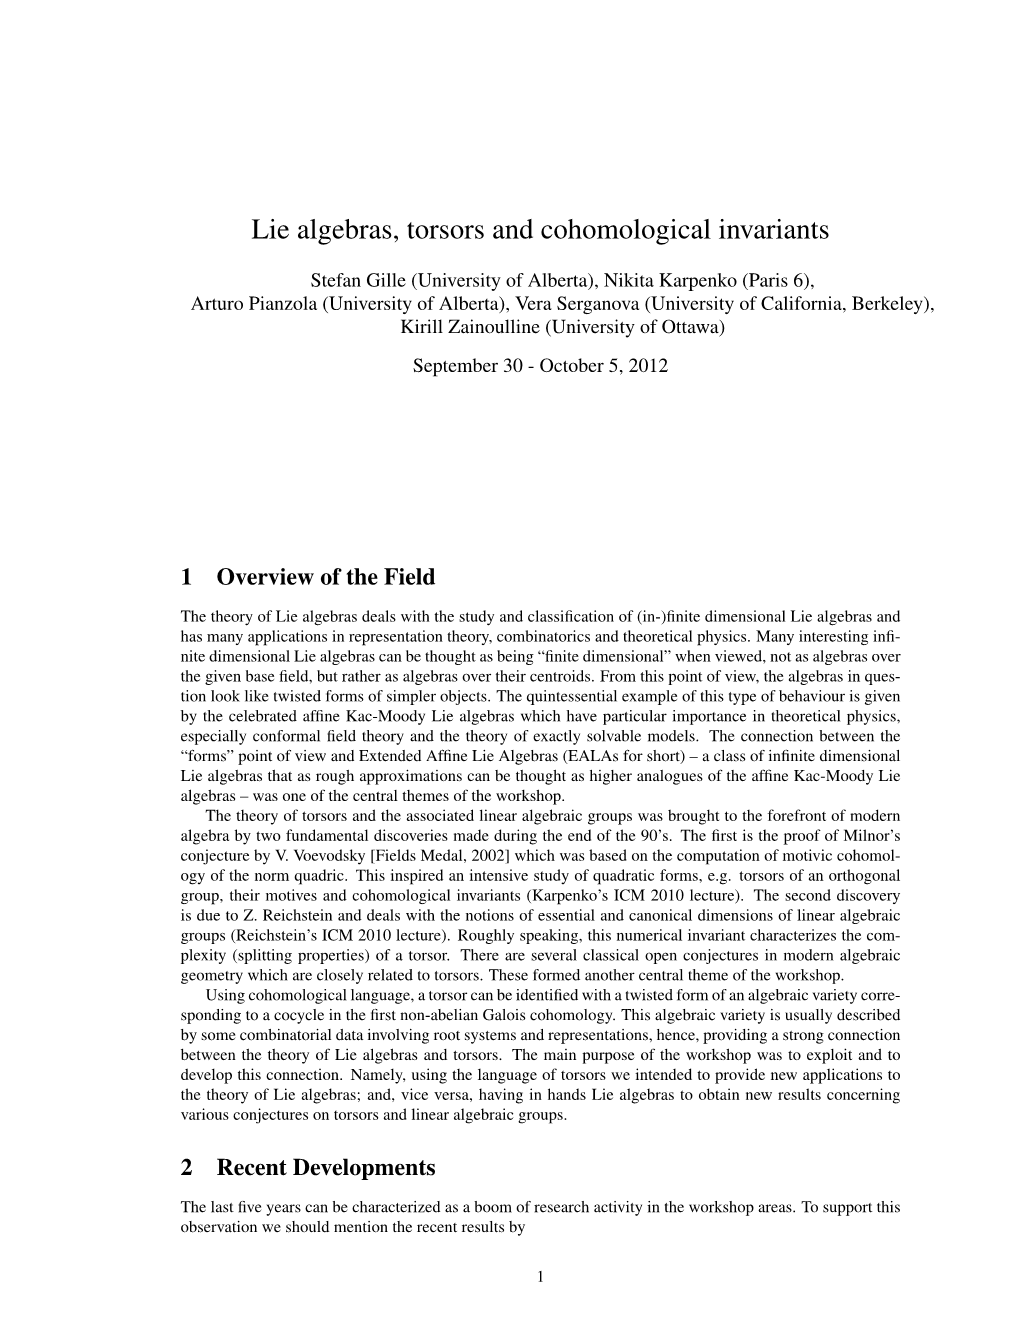 Lie Algebras, Torsors and Cohomological Invariants